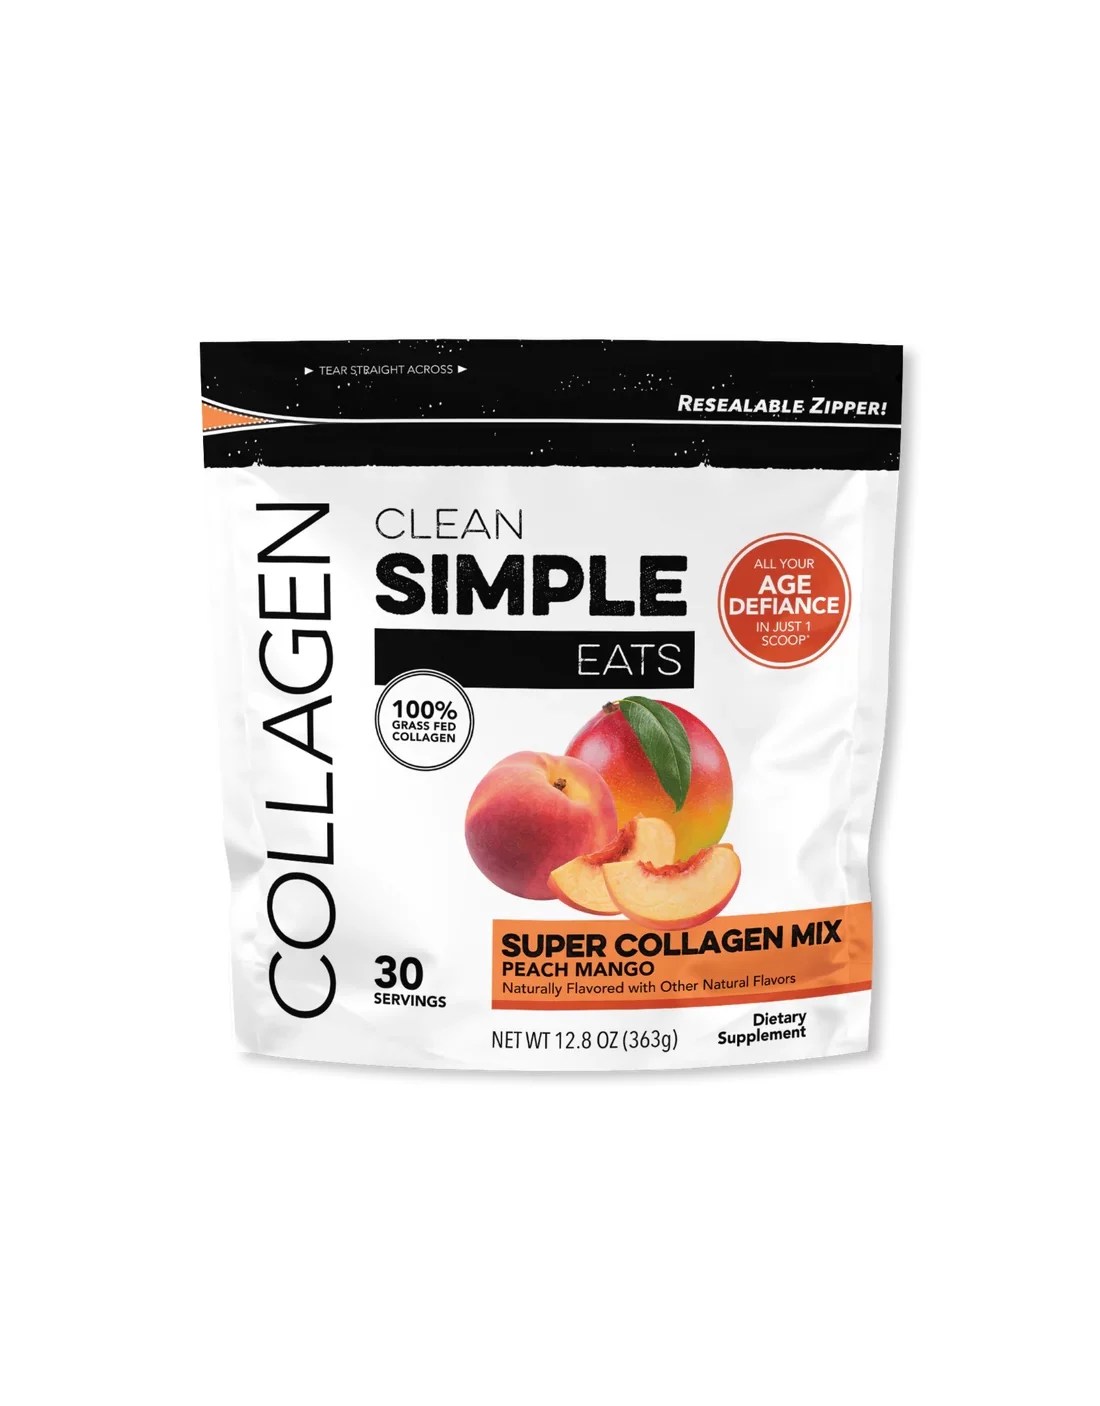 Clean Simple Eats Peach Mango Super Collagen Mix